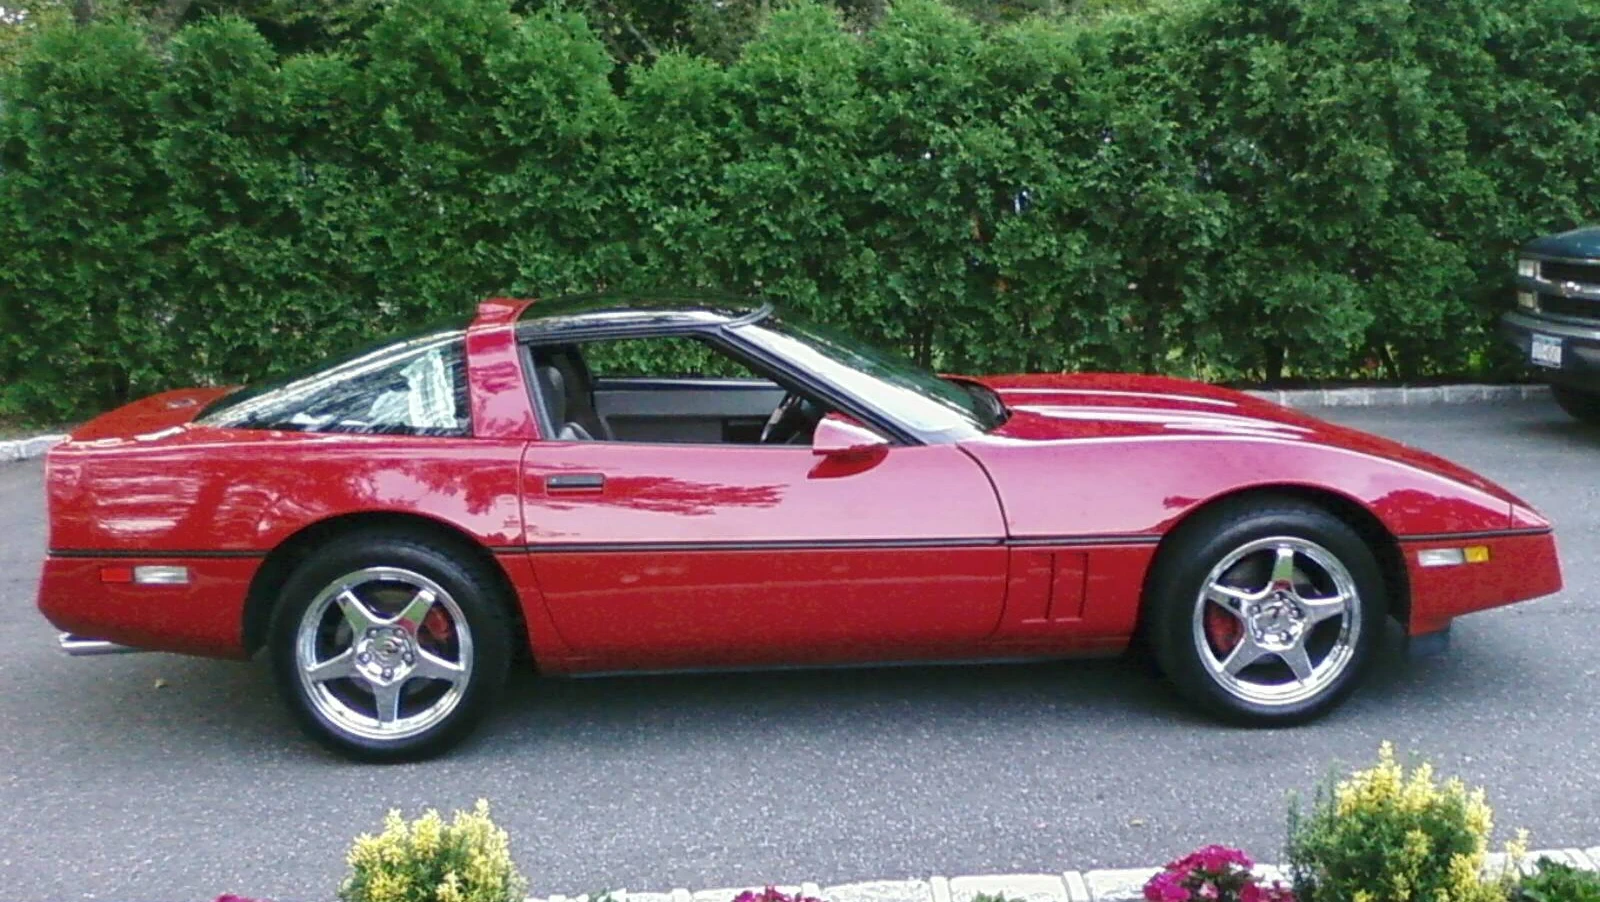 Corvette Generations/C4/C4 1988 Right Red cp.webp